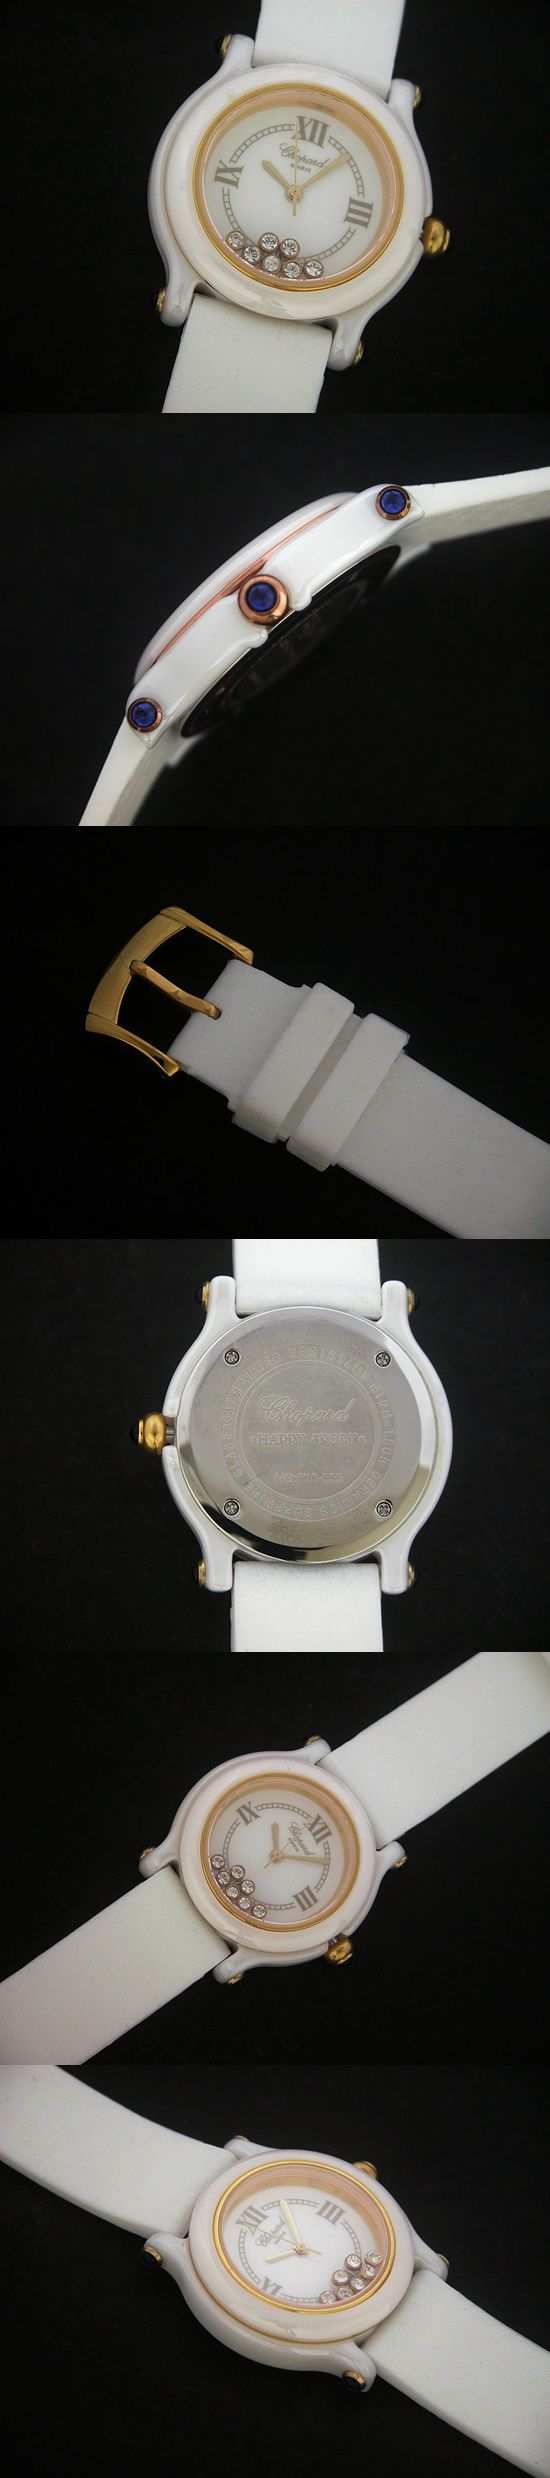 おしゃれなブランド時計がショパール-CHOPARD-ハッピースポーツ-27/8245-23-ab  女性用腕時計を提供します.